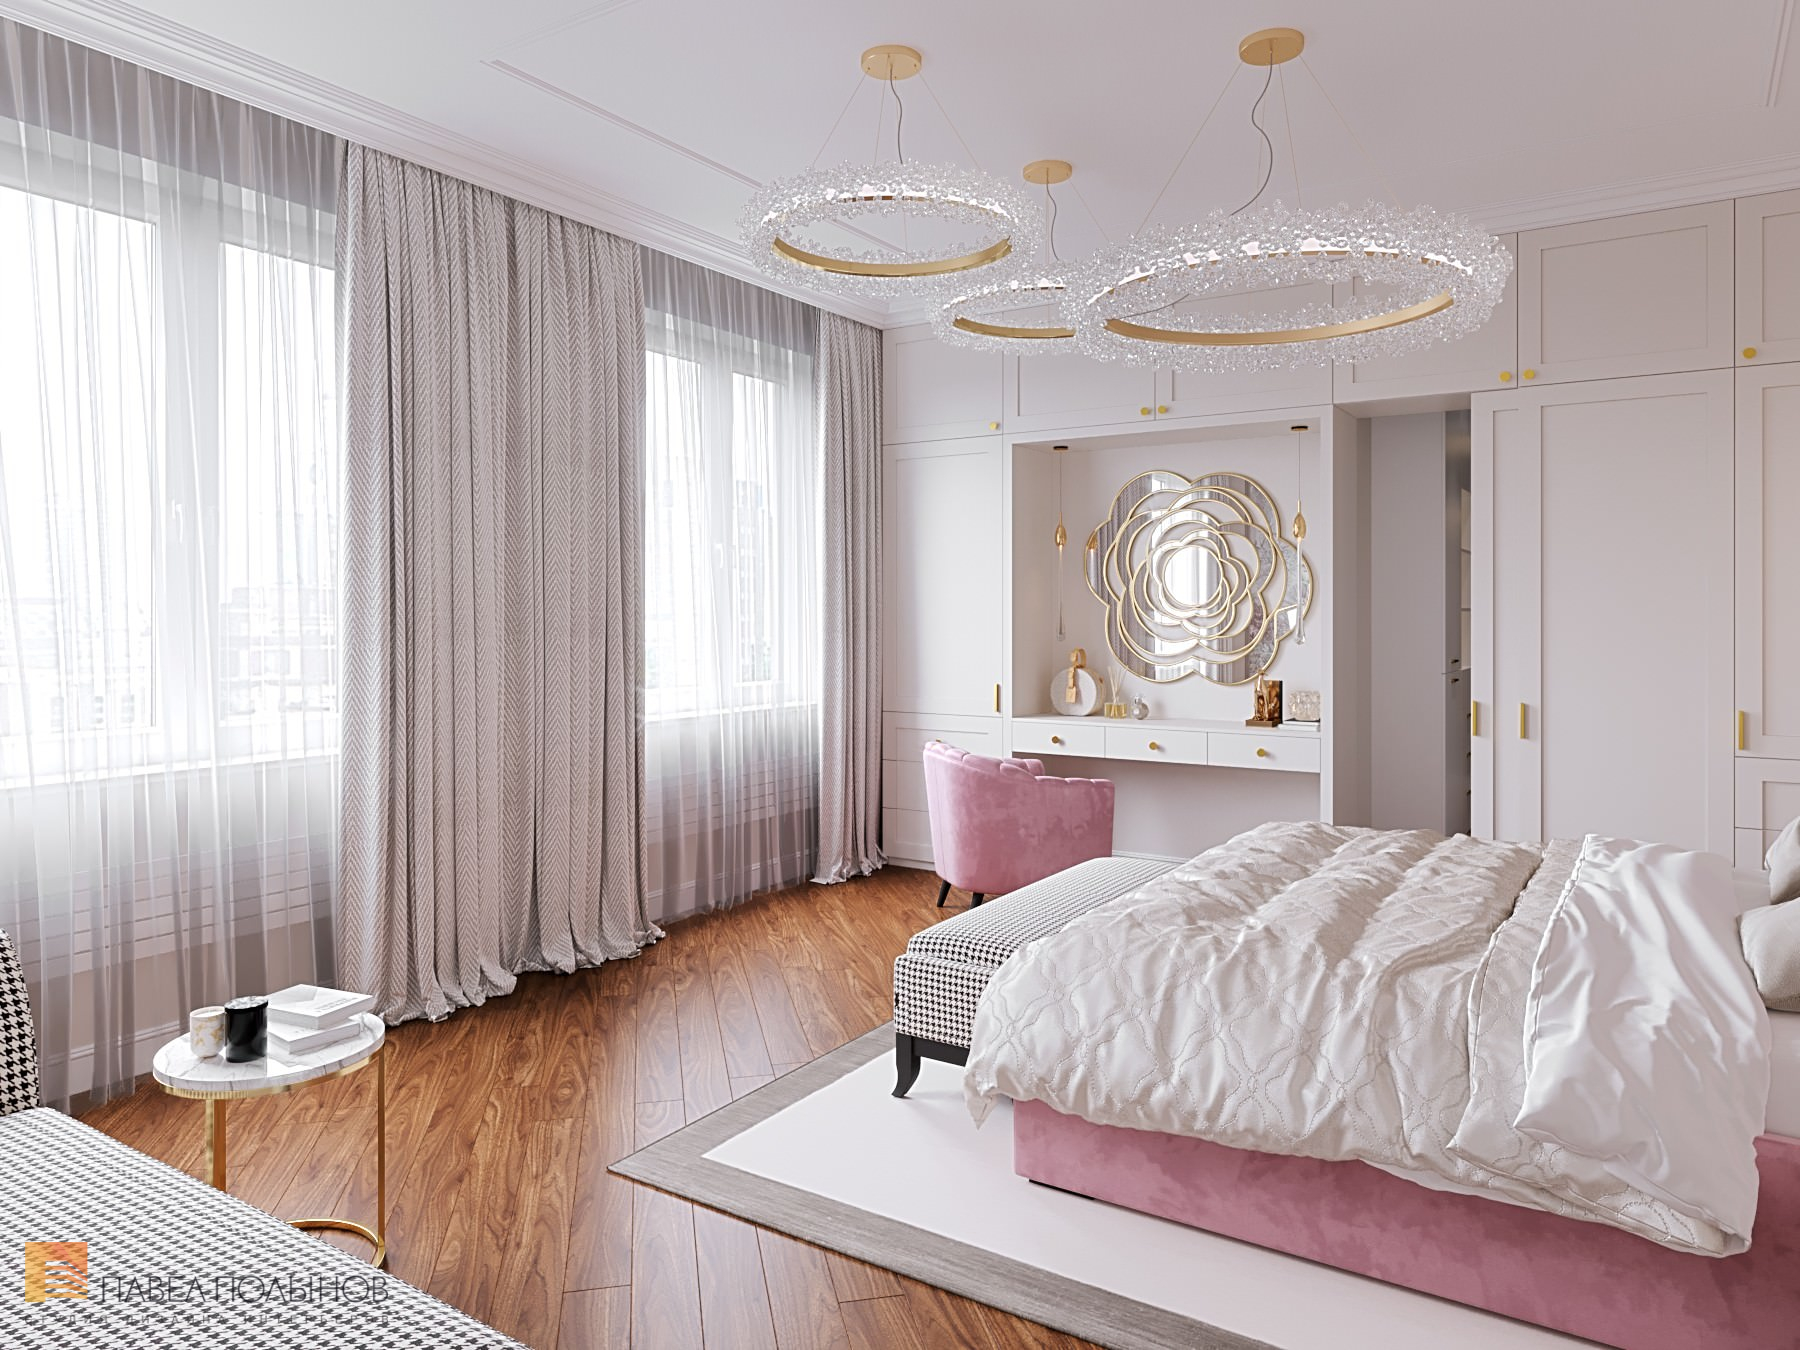 Фото спальня из проекта «Интерьер квартиры в классическом стиле с элементами ар-деко, ЖК «Жемчужный берег», 128 кв.м.»